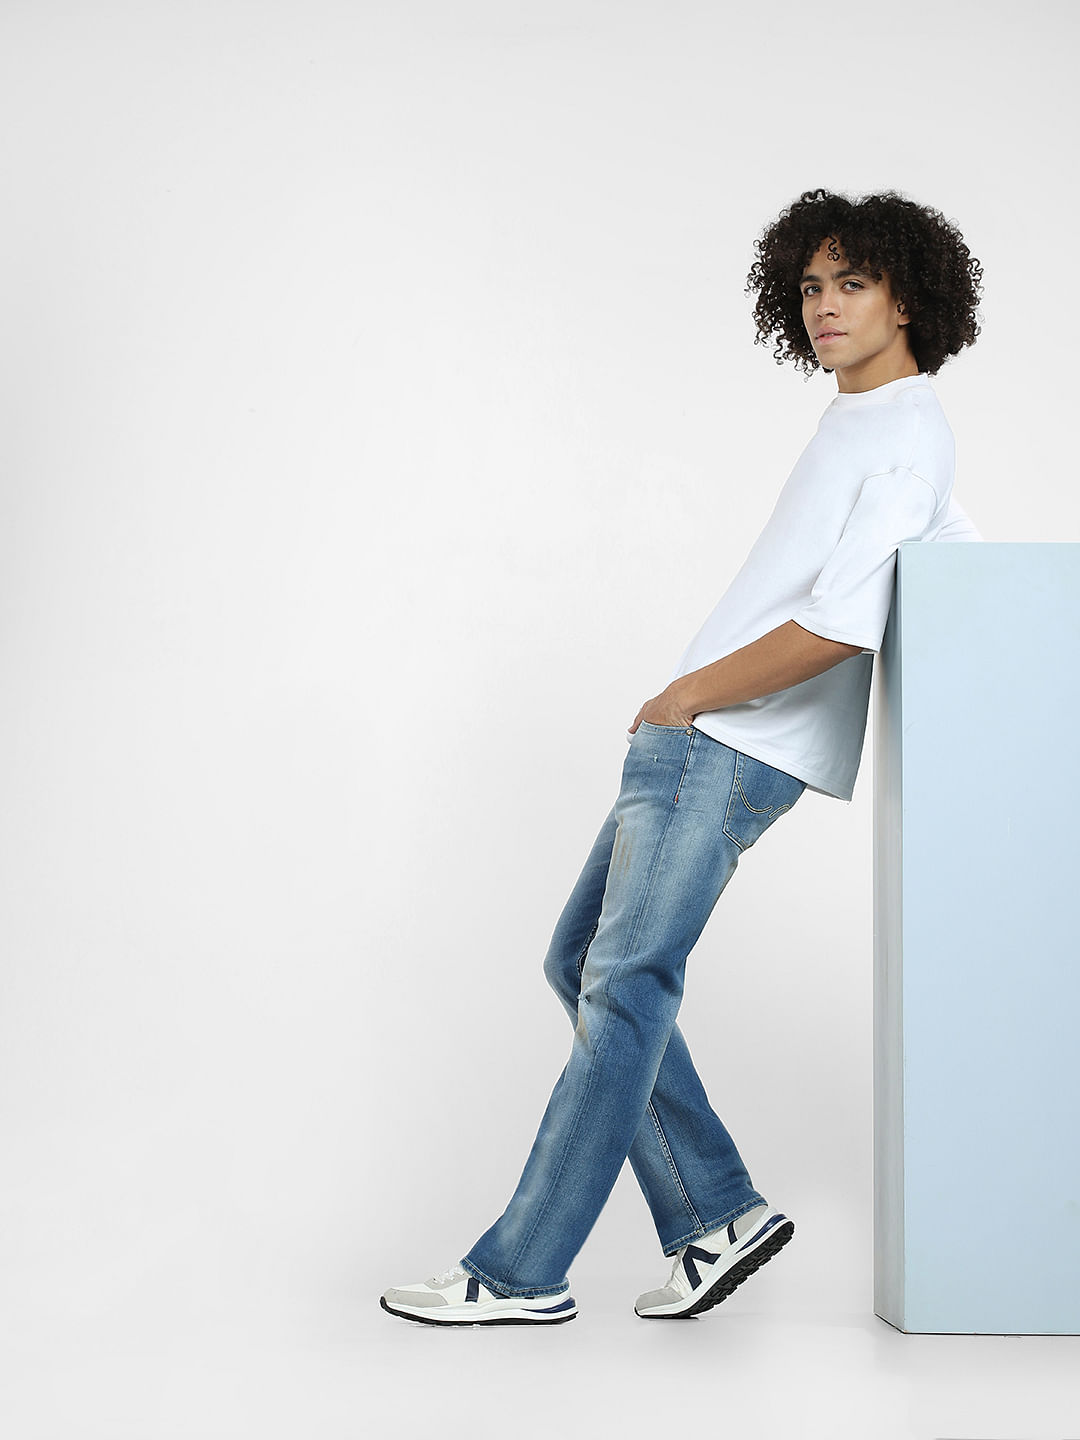 Levis jeansmenwesternwear  Buy Levis 517 Boot Cut Jeans Online  Nykaa  Fashion